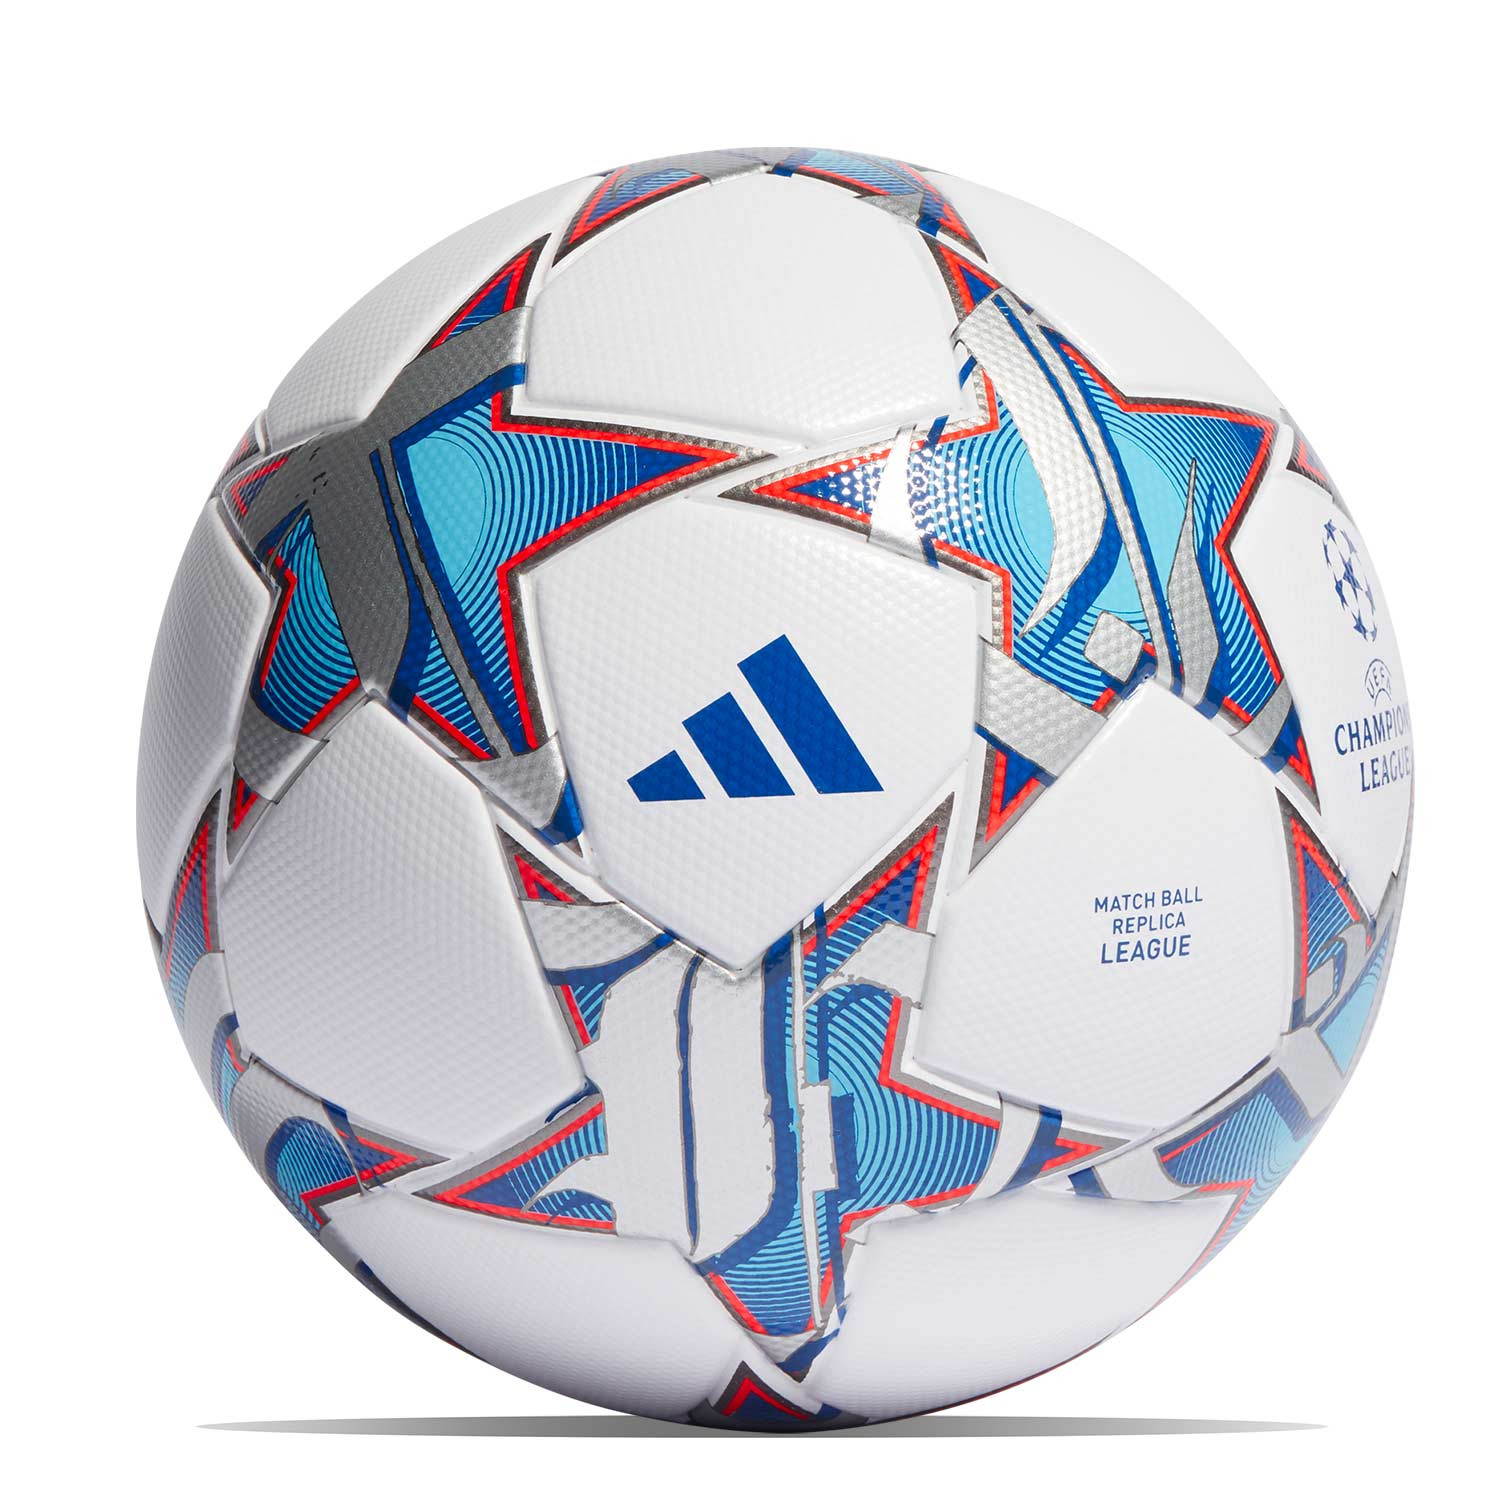 Así es el nuevo balón de adidas para la UEFA Champions League